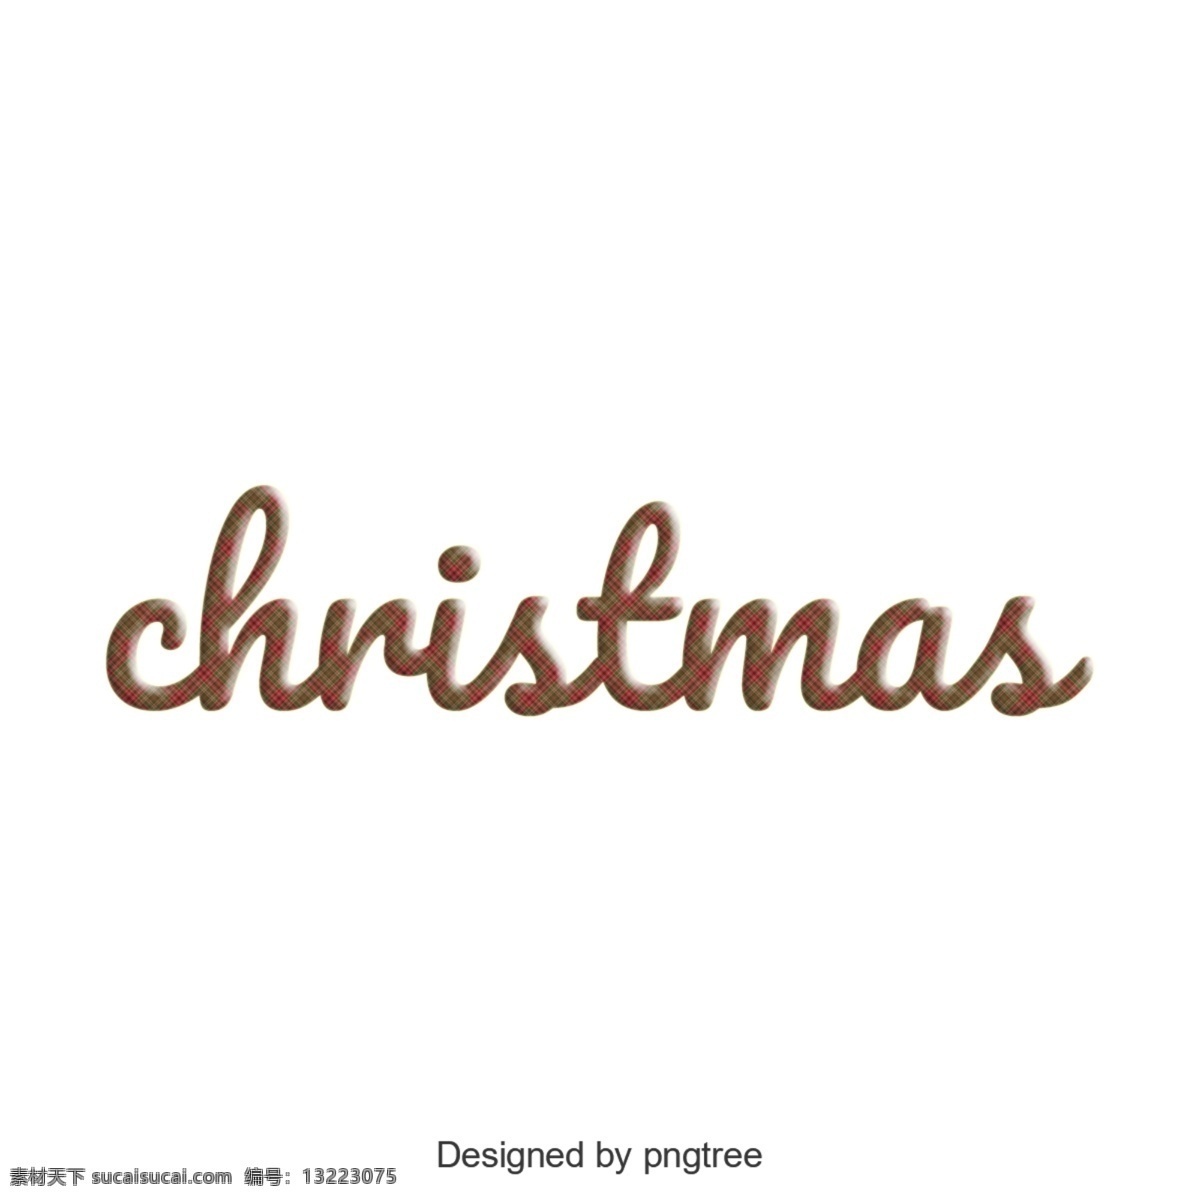 英语 字母 圣诞 设计艺术 个性 元素 英语字母 艺术个性元素 png元素 透明的元素 布朗 简洁 富有创造性